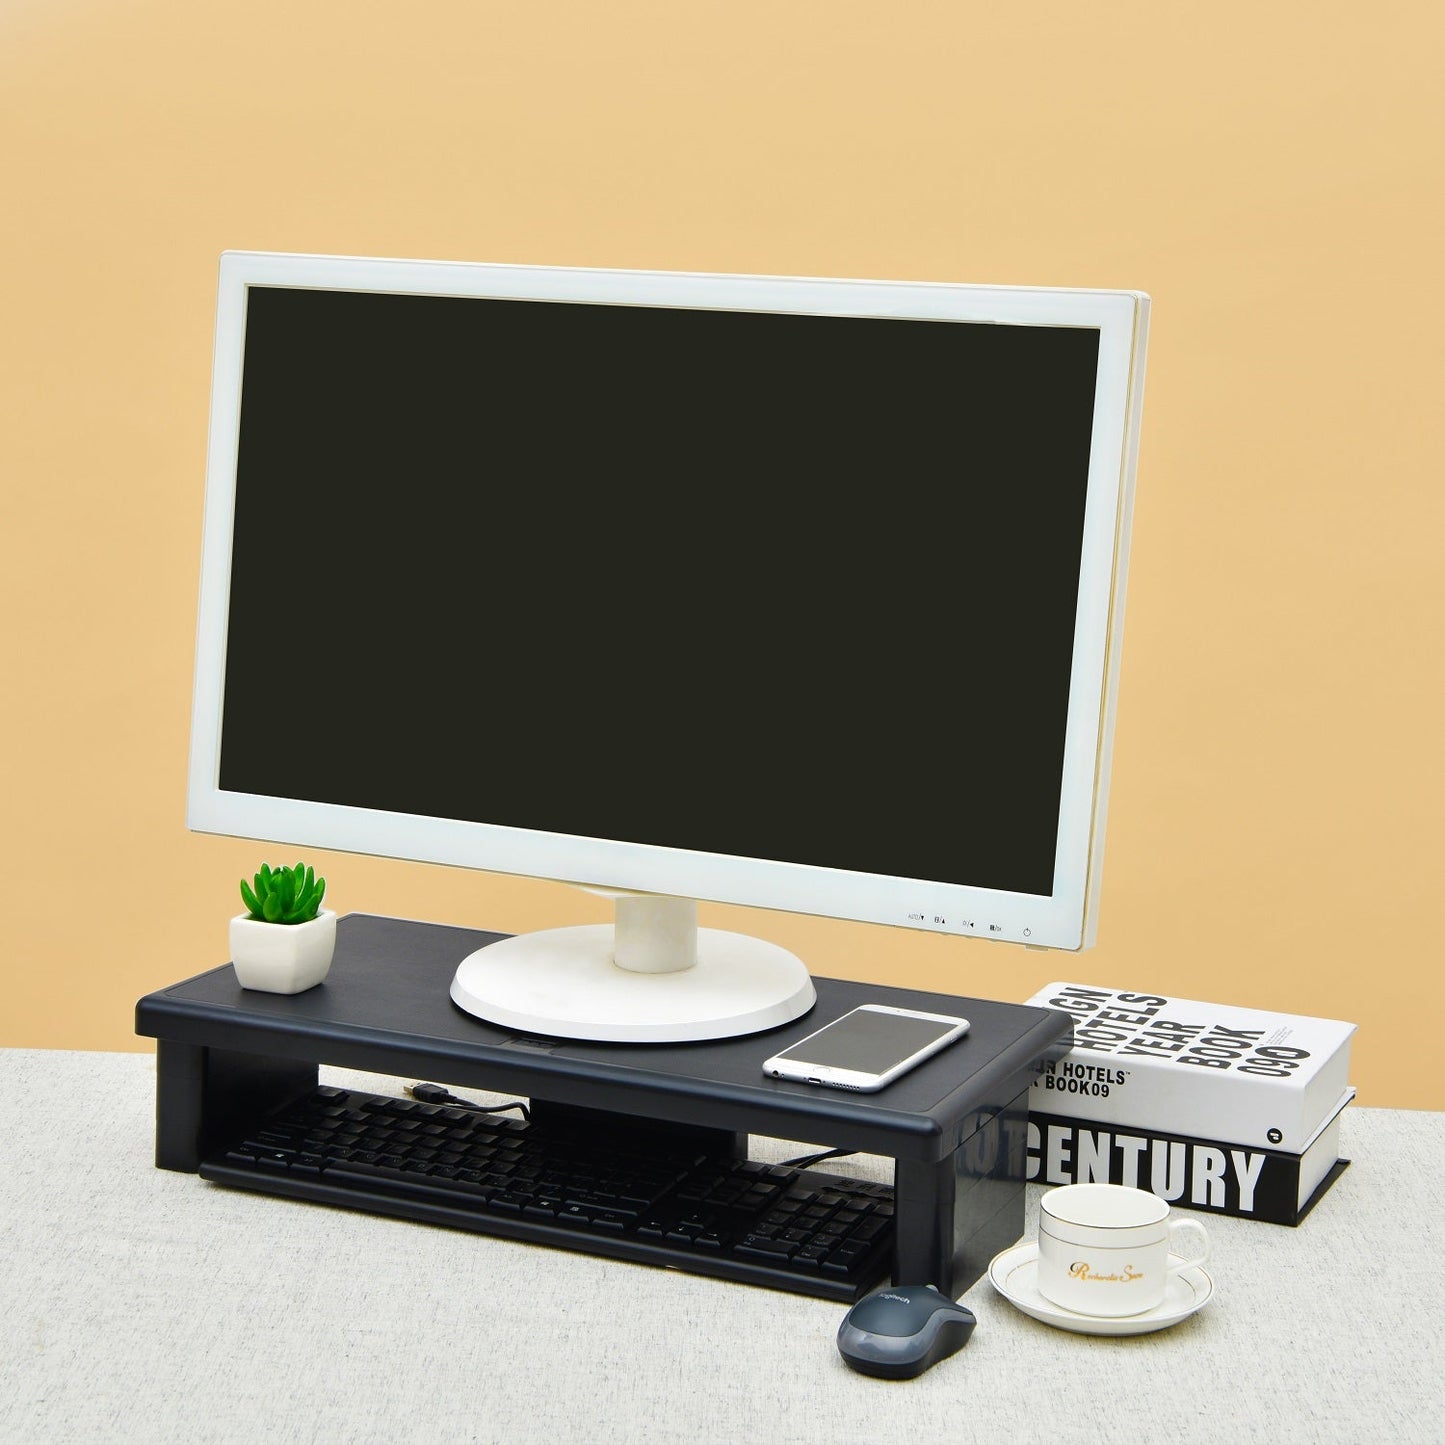 DAC® Stax MP-211 Support pour écran/ordinateur portable ultra-large réglable en hauteur, noir